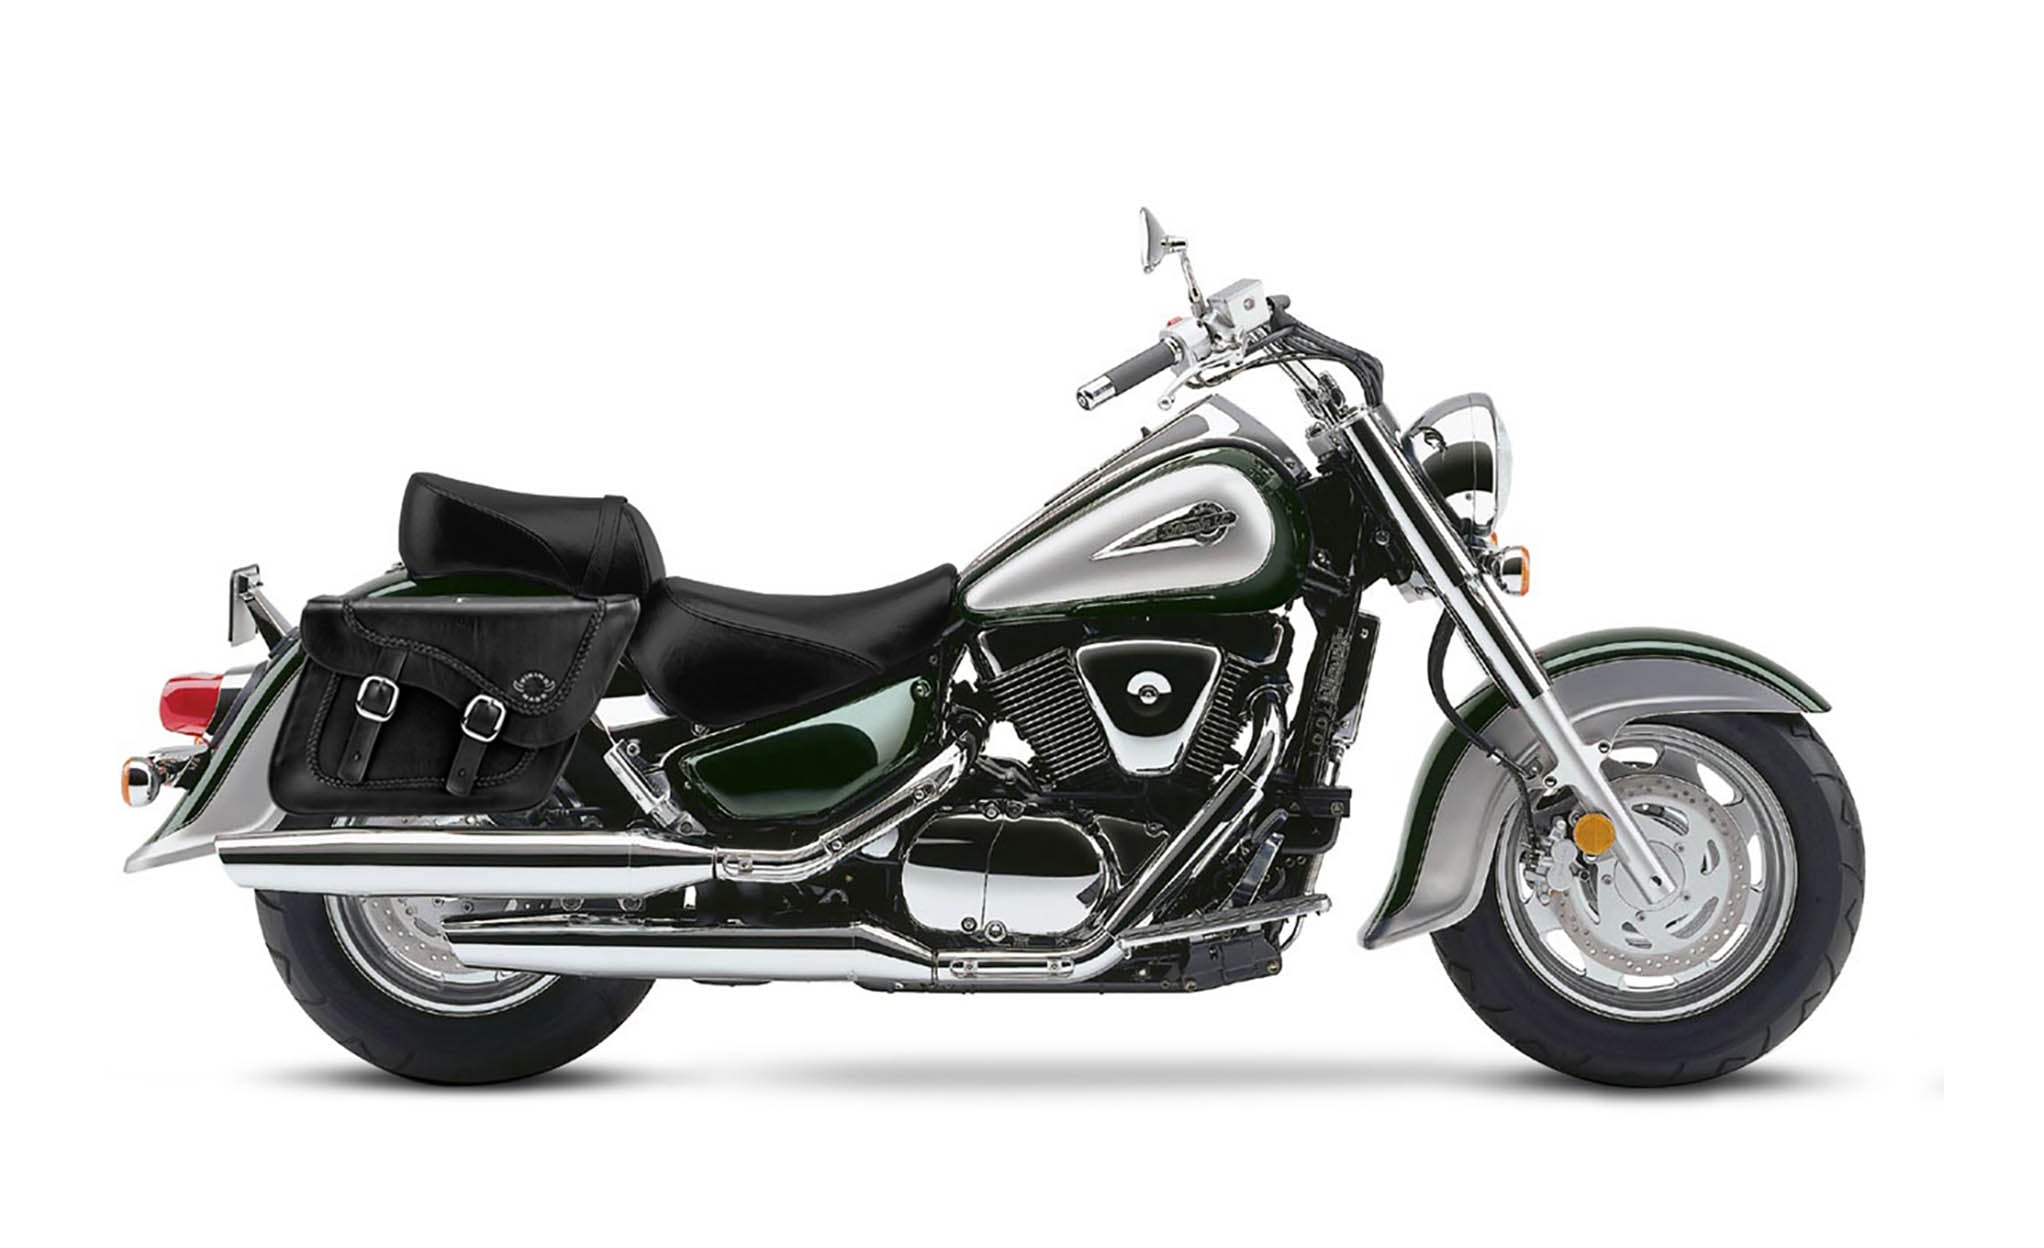 Viking Americano Suzuki Intruder 1500 Vl1500 Braided Large Leather Motorcycle Saddlebags on Bike Photo @expand